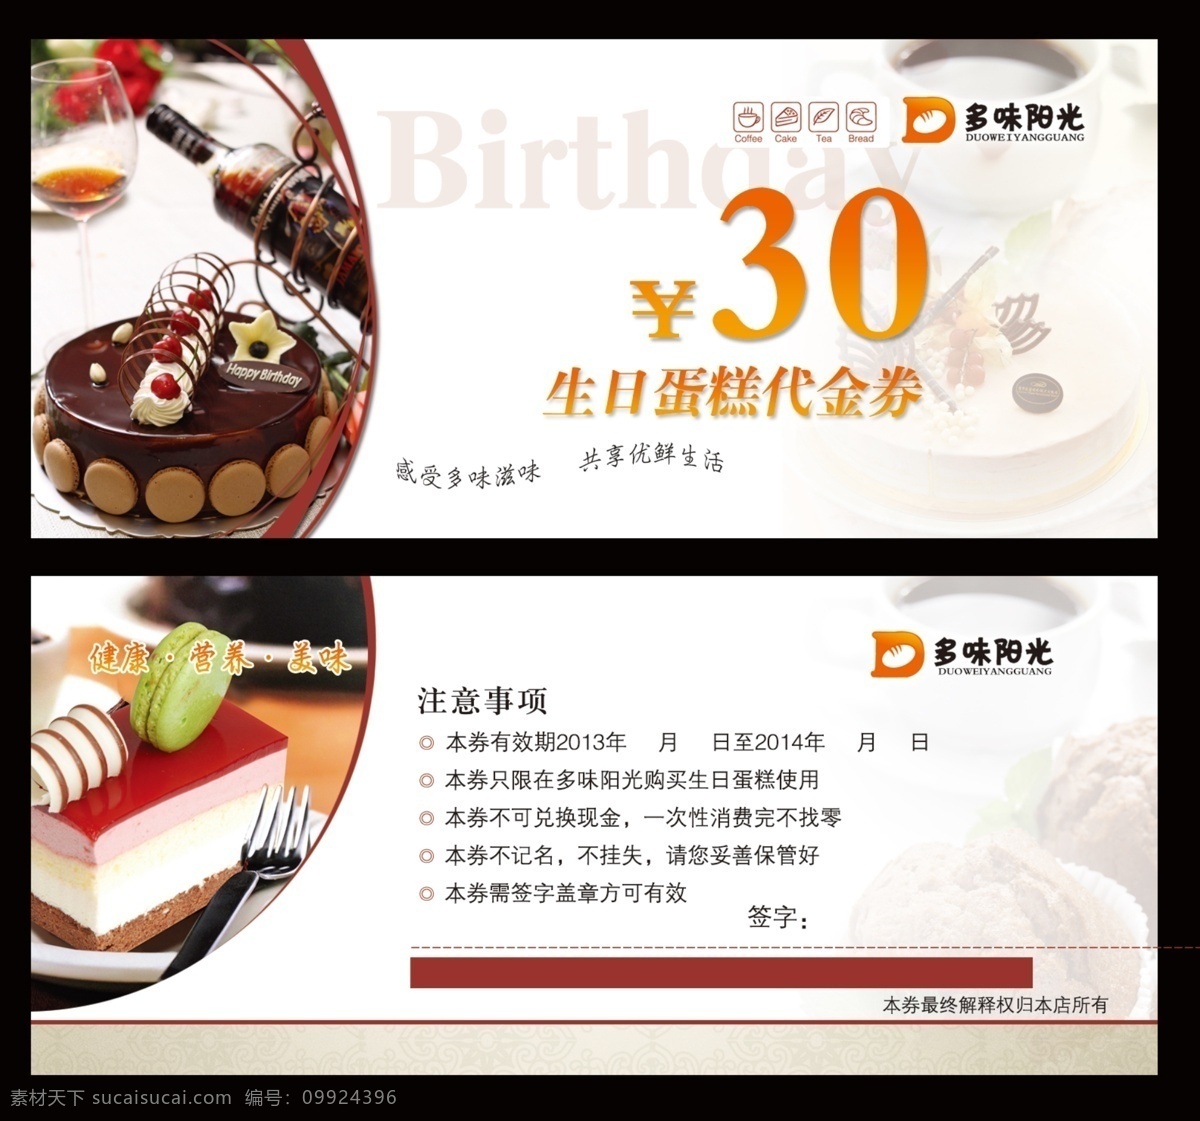 生日蛋糕 代金券 代金券模板 蛋糕代金券 蛋糕素材 广告设计模板 名片卡片